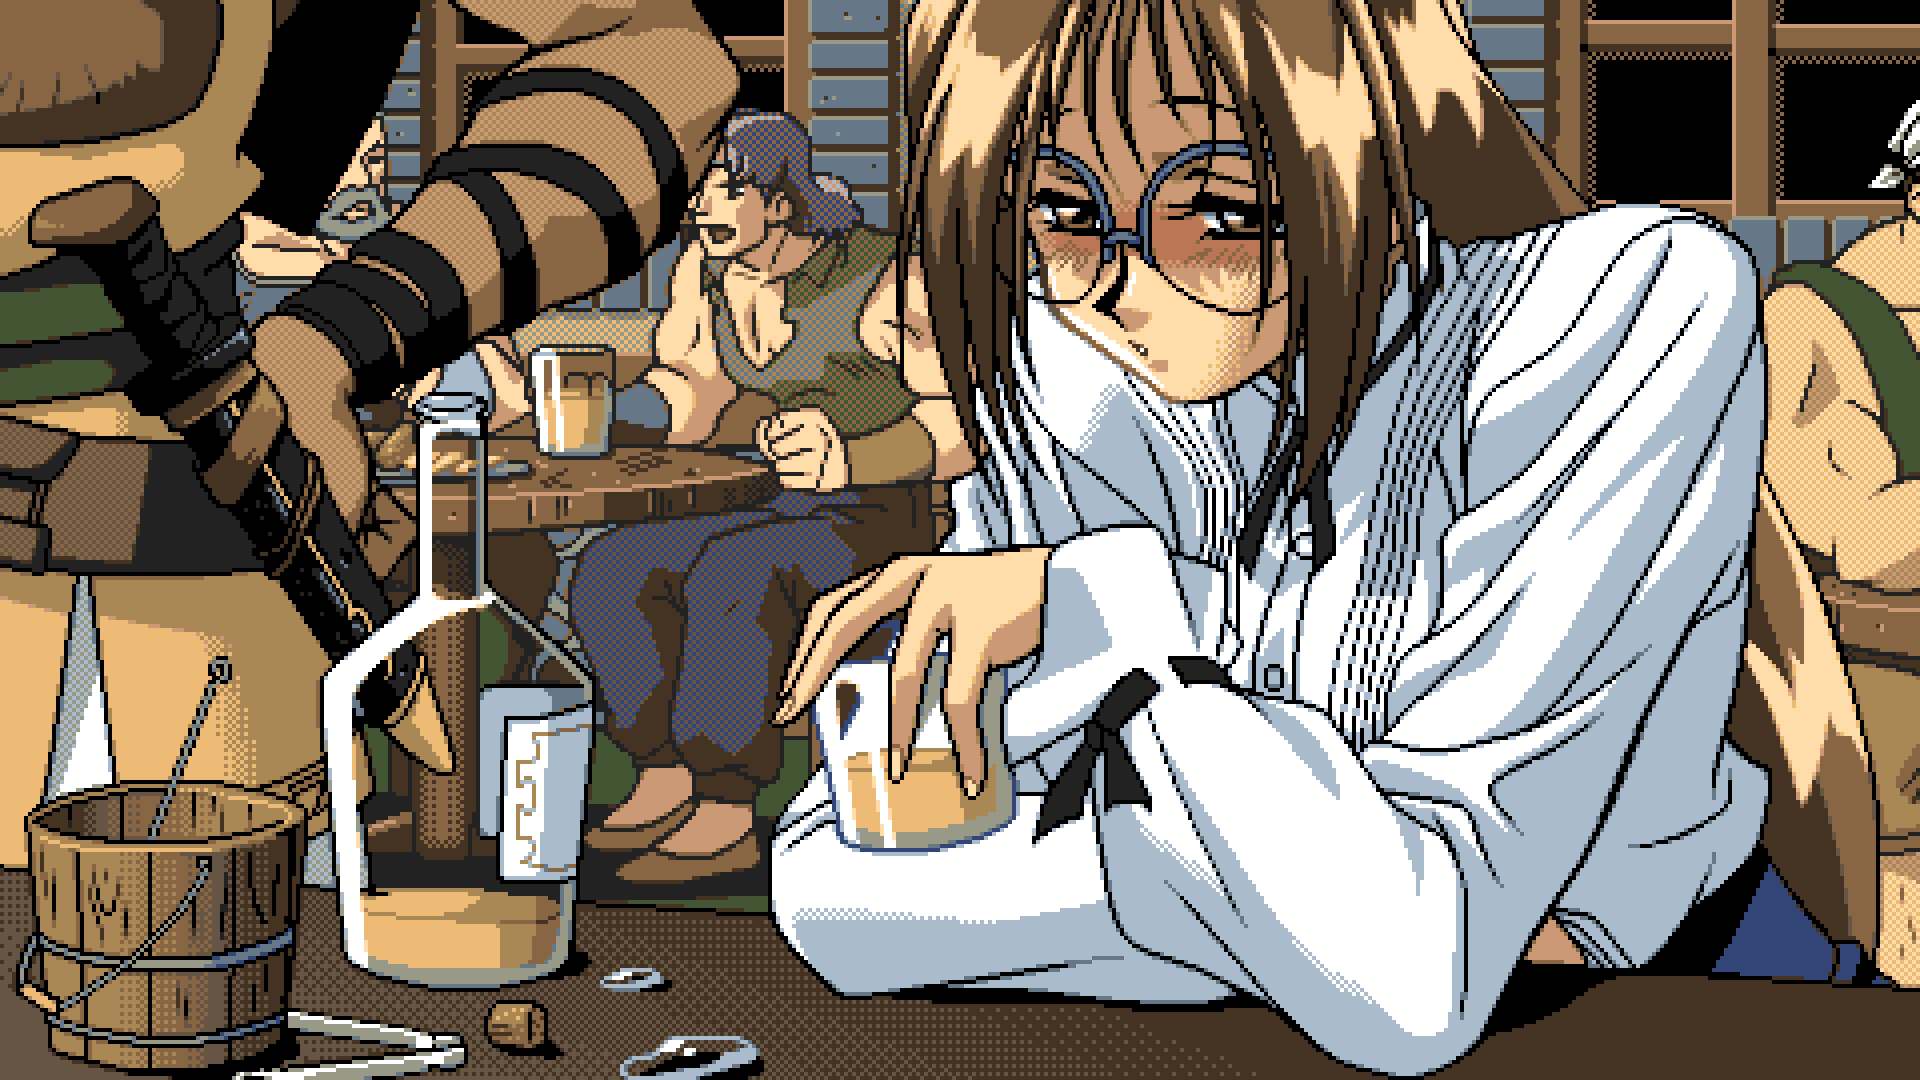 Anime 1920x1080 PC-98 Game CG pixel art anime girls anime boys beer glasses artwork digital art alcohol drinking bar